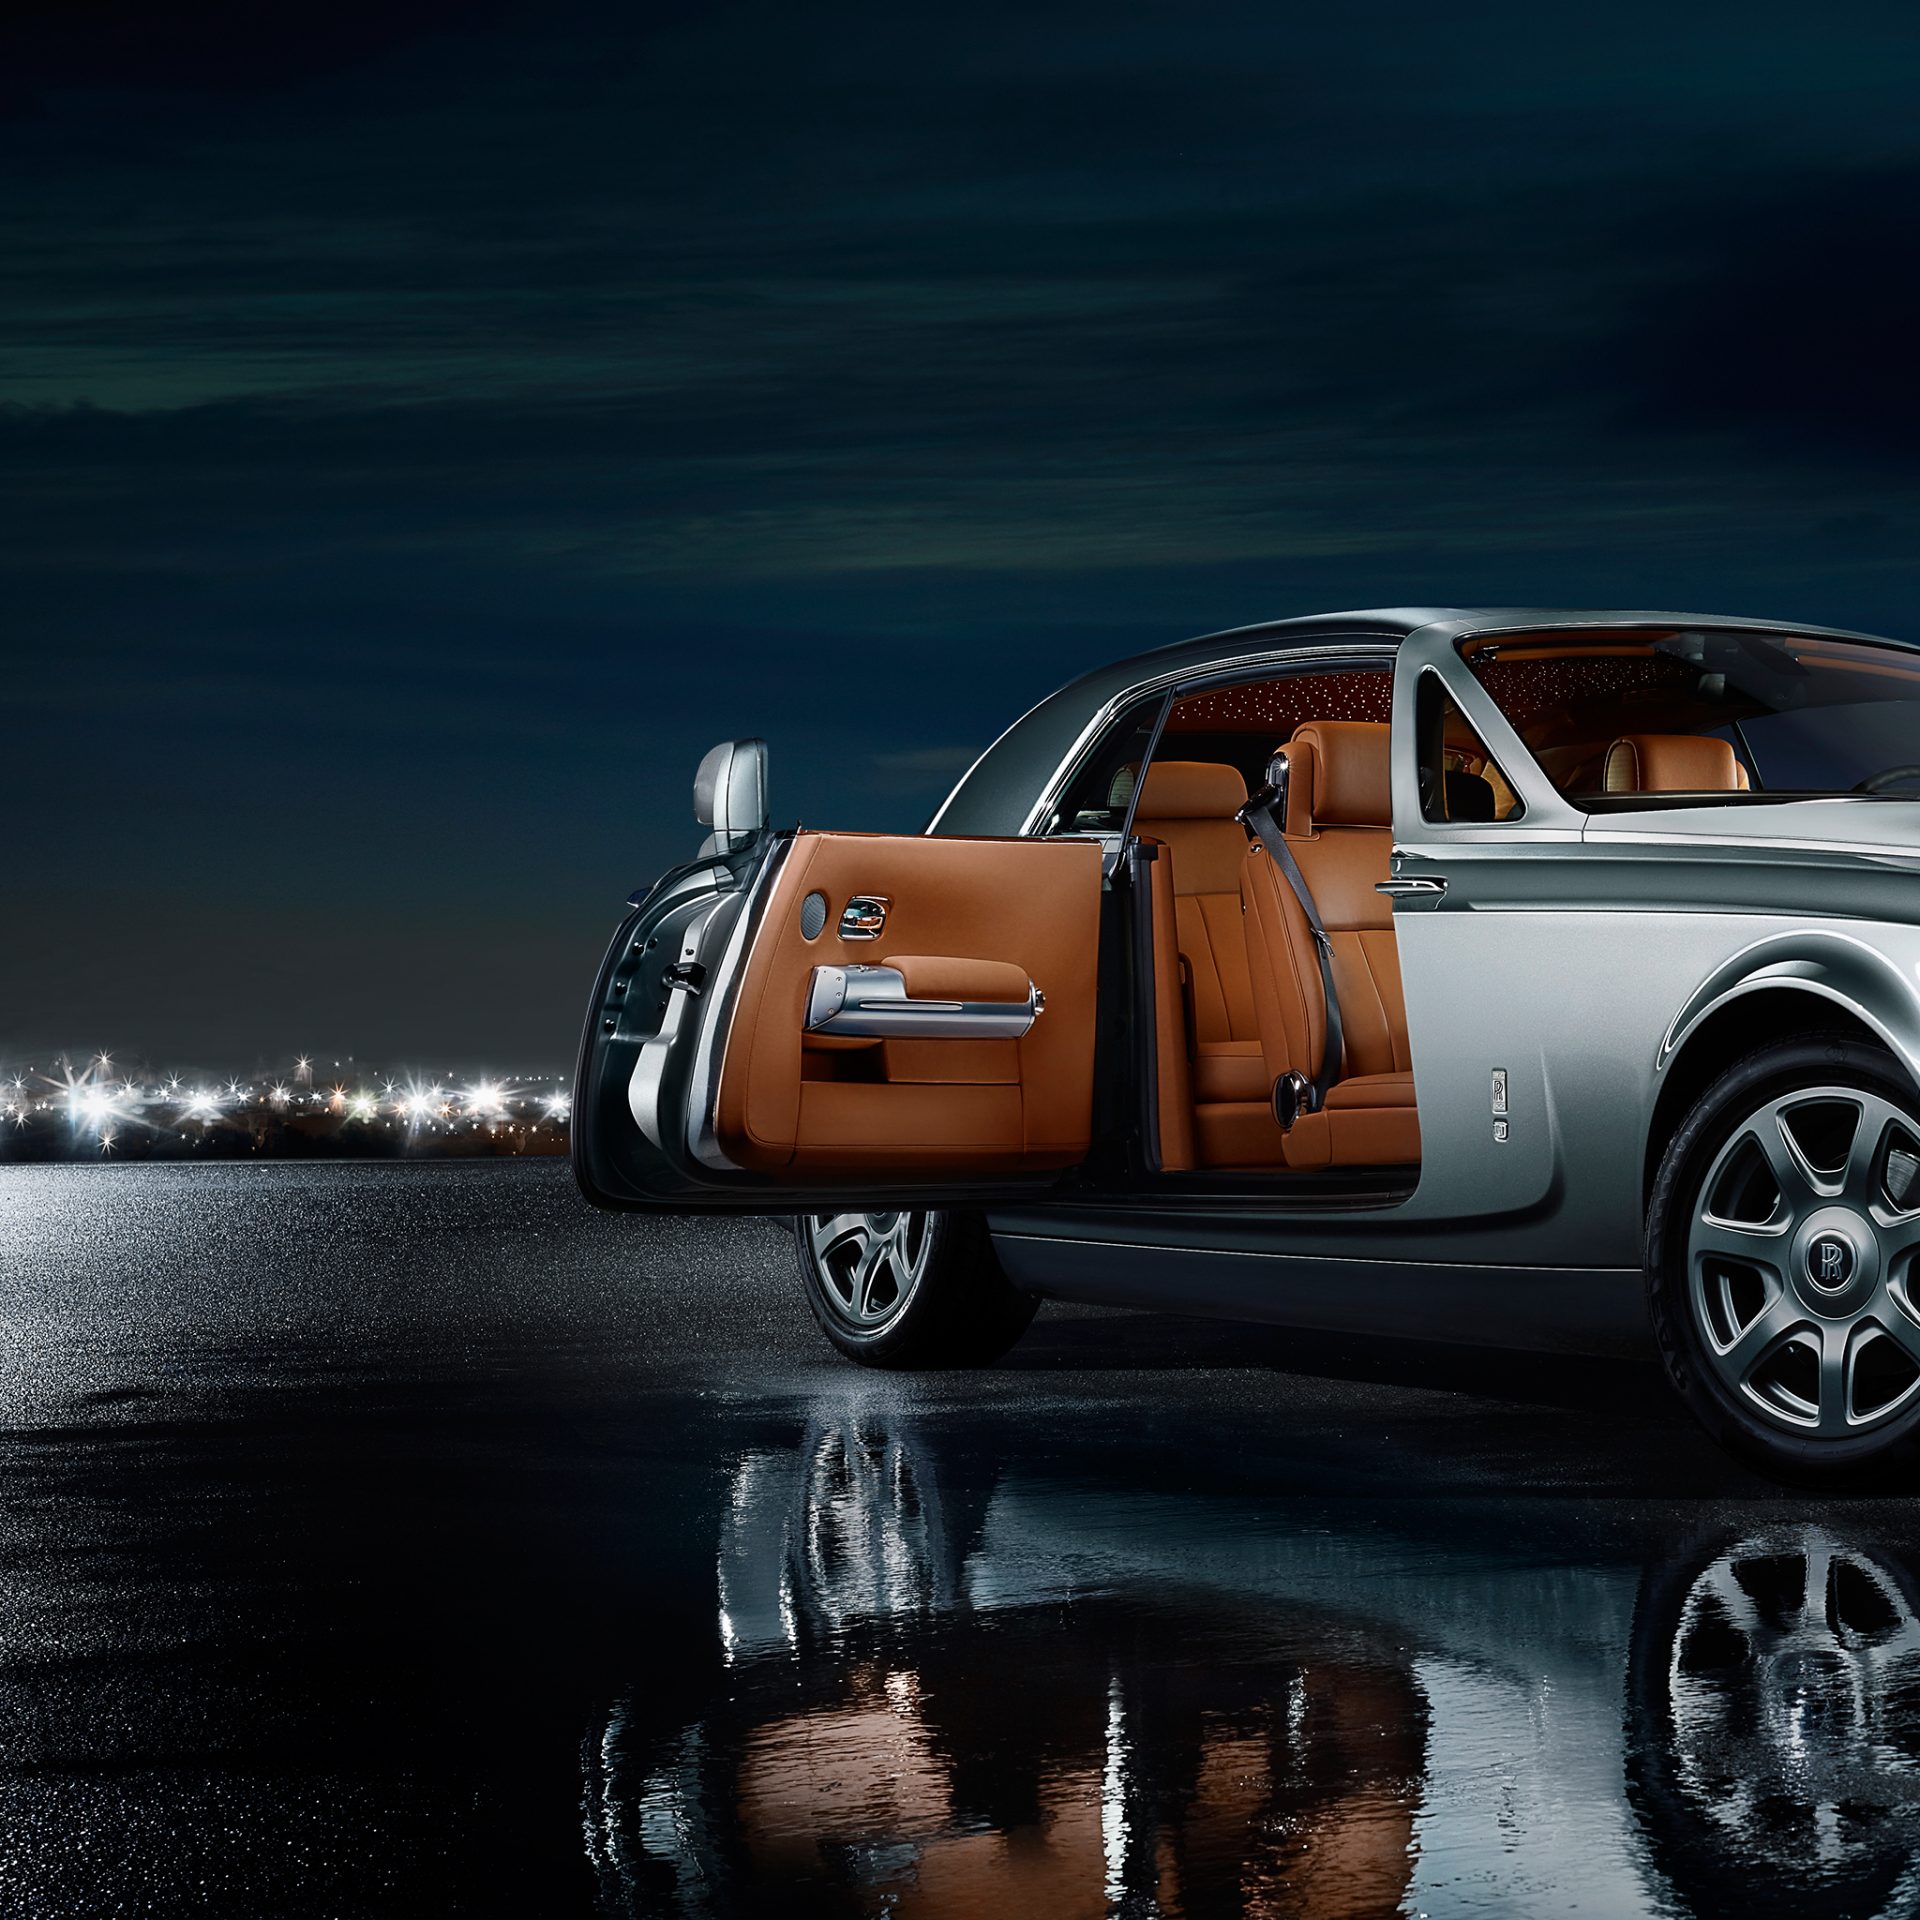 ¿Te gustaría tener un Rolls-Royce? ¿Sabías que puedes elegir entre 40.000 colores la pintura para su carrocería?